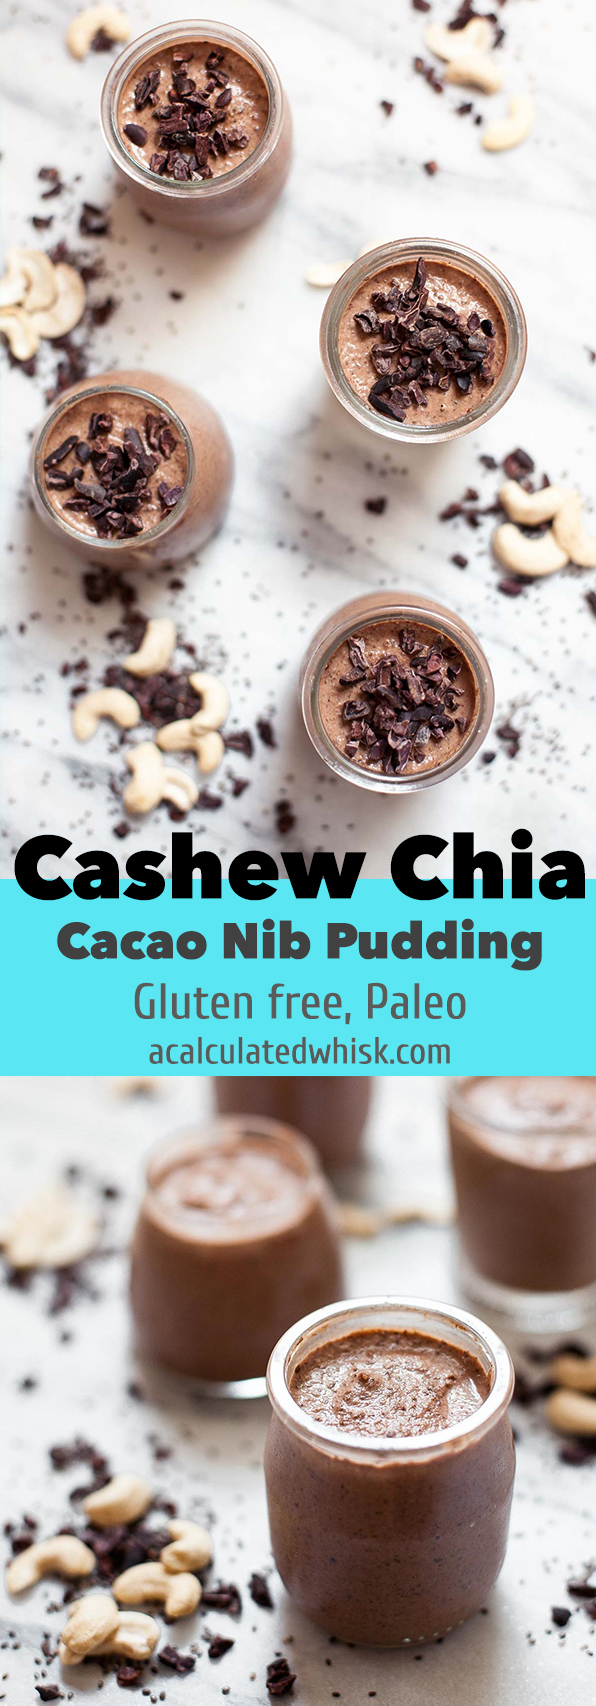 Cashew Chia Cacao Nib Pudding (Gluten free, Paleo) | acalculatedwhisk.com